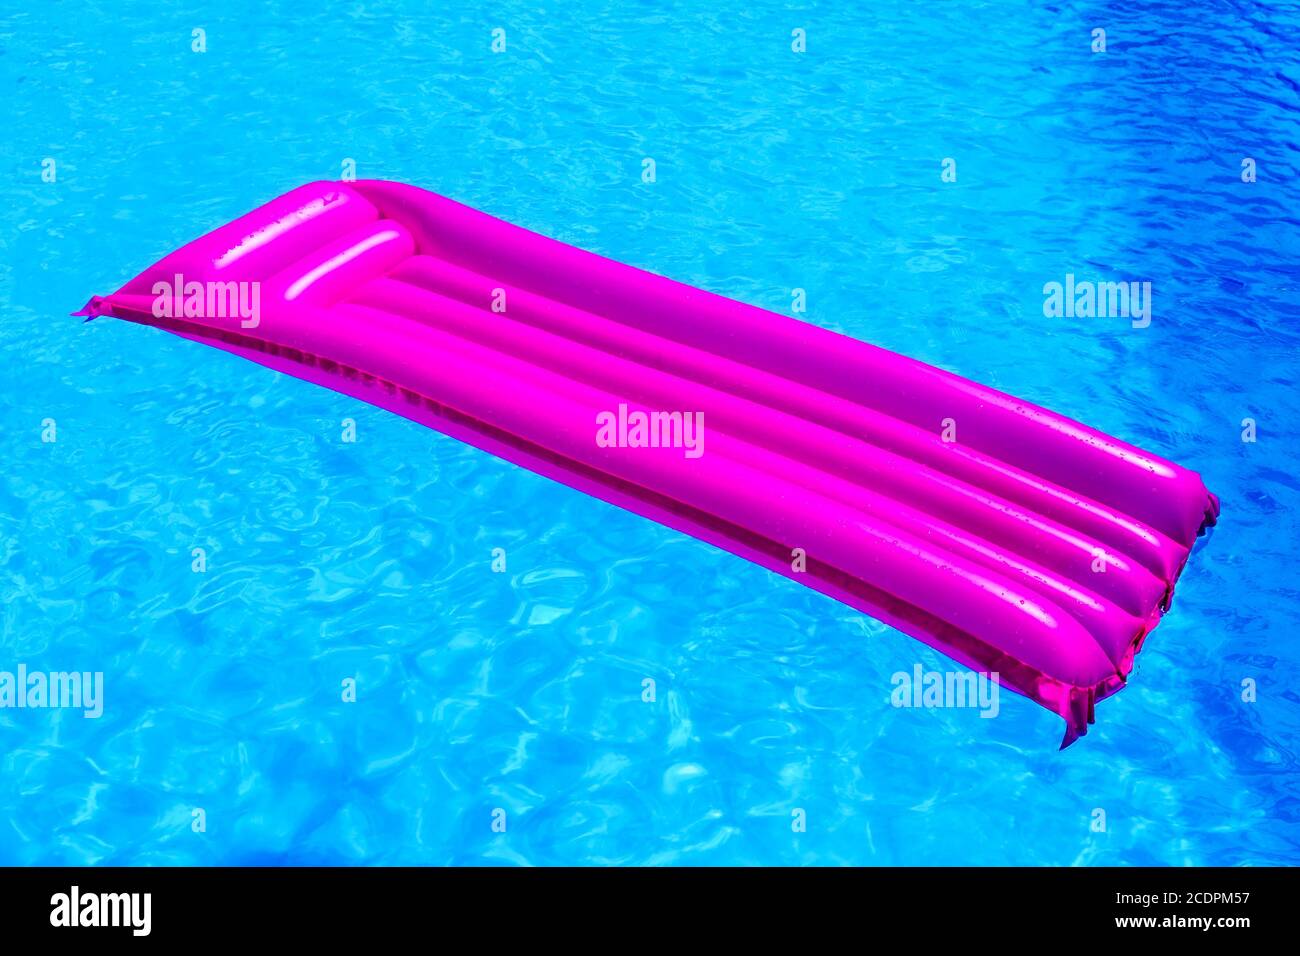 Matelas à air rose flottant sur l'eau de la piscine Banque D'Images